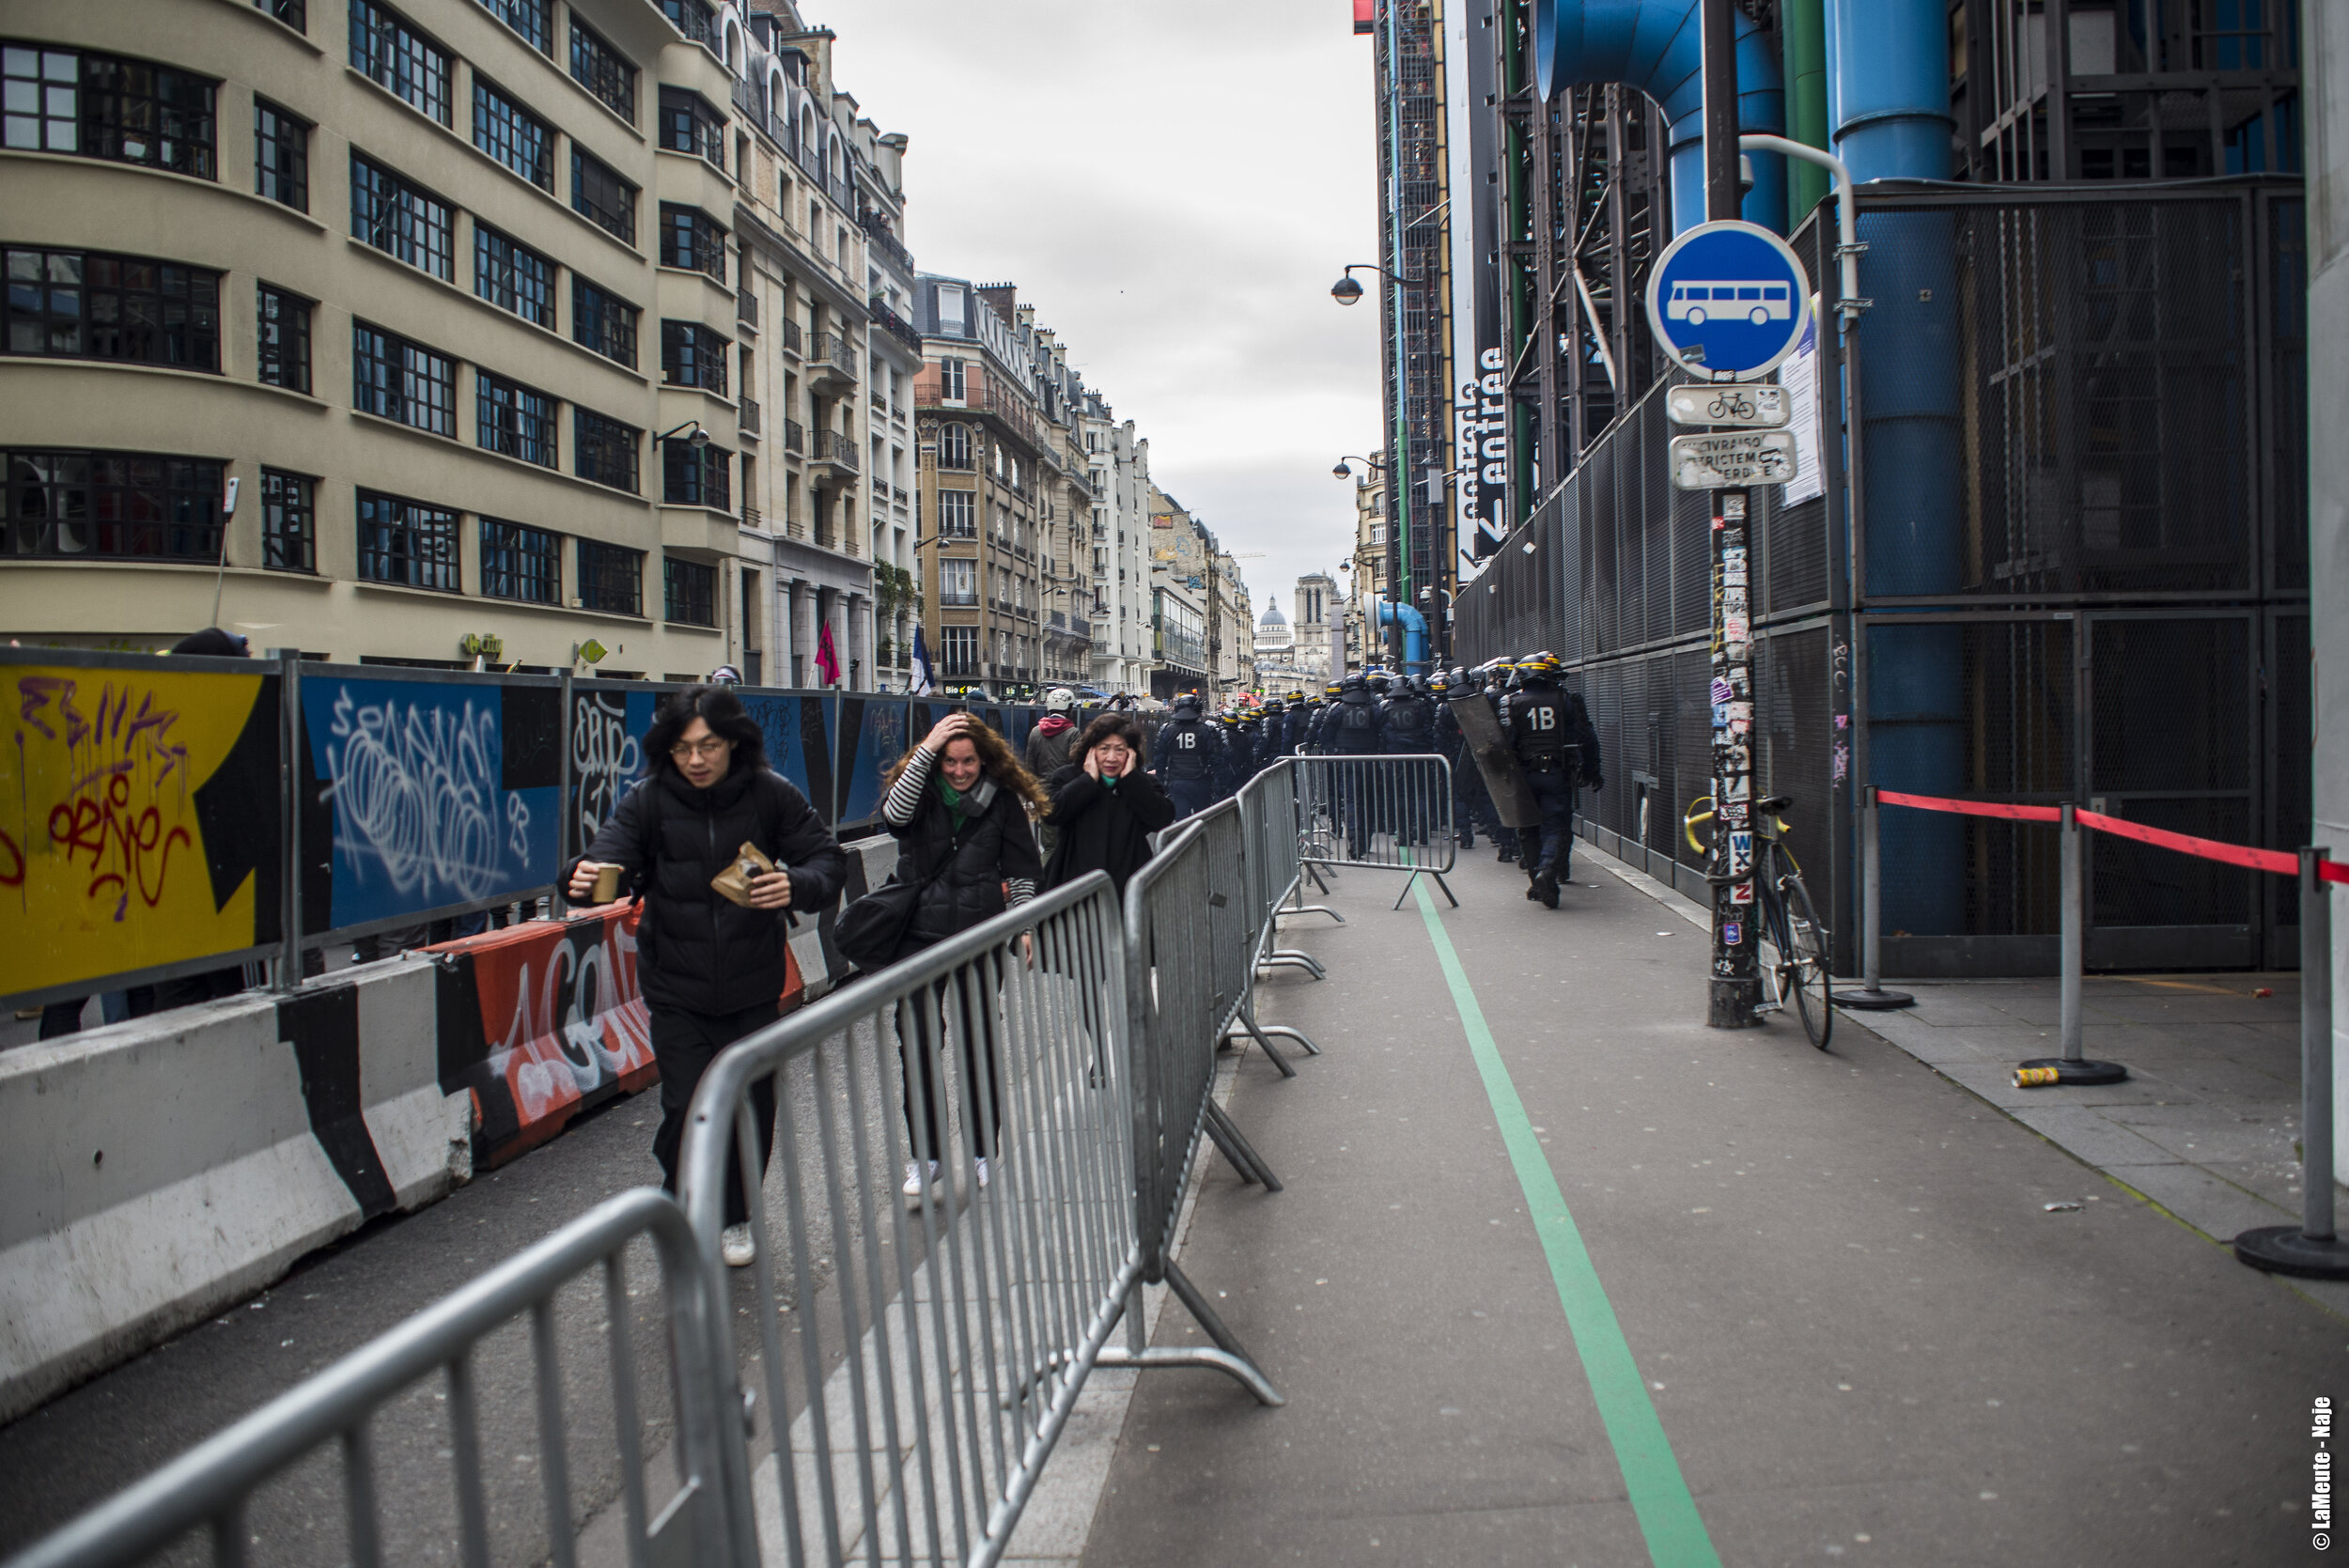   Arrivé à la hauteur du centre Georges Pompidou, les esprits s’animent. Certains touristes, surpris•es par le passage de la manifestation, s’éloignent rapidement.  ©LaMeute - Naje.      